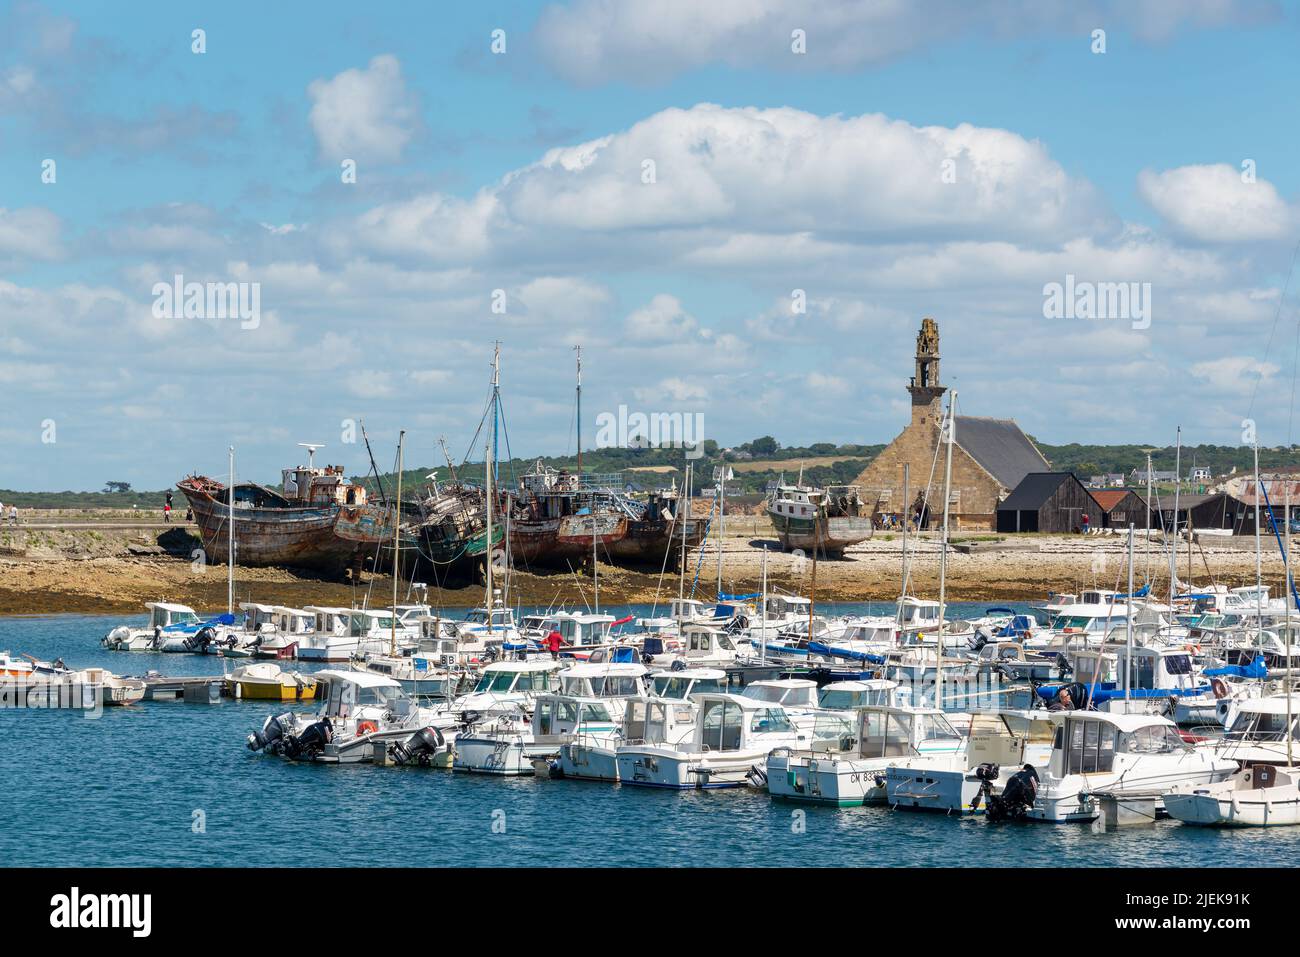 Le port de Camaret et le cimetière de bateaux dans la péninsule de Crozon, Finistère, Bretagne France Banque D'Images